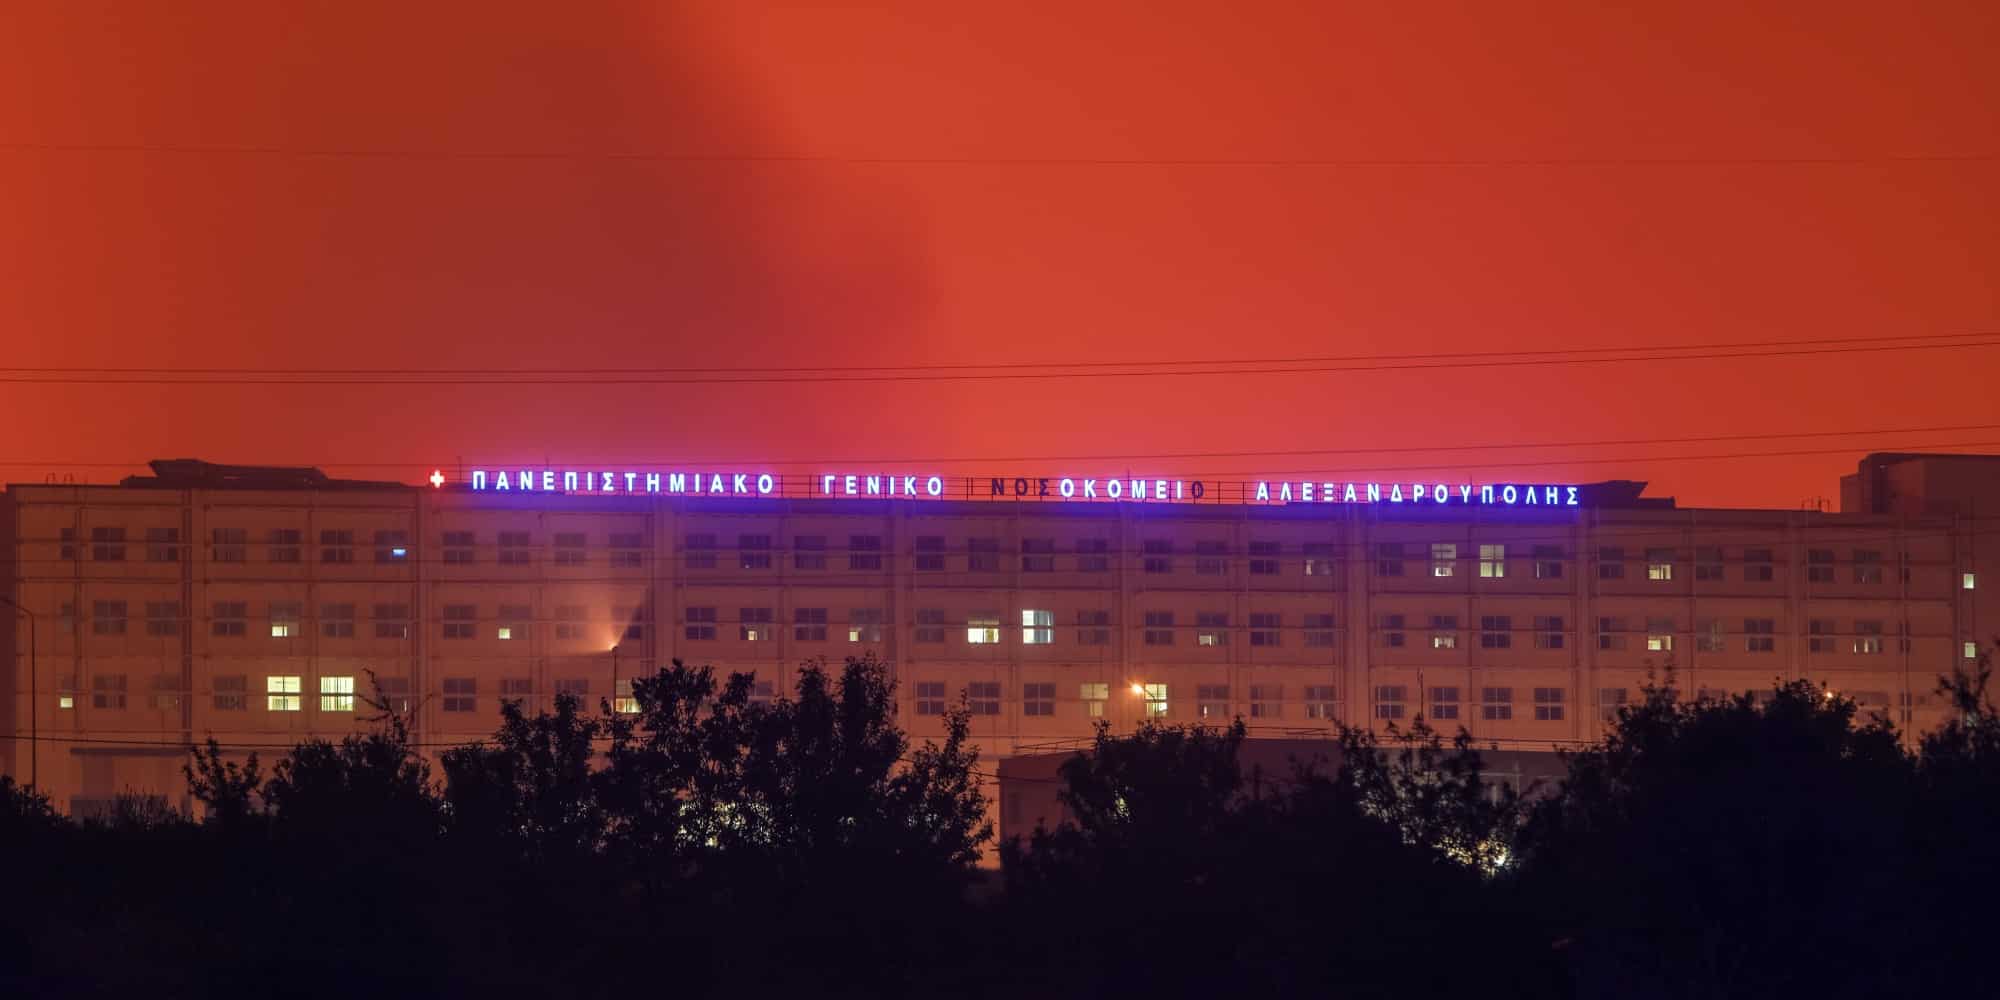 Μαίνεται για τέταρτη ημέρα η φωτιά στην Αλεξανδρούπολη - Εκκενώθηκε το νοσοκομείο, 90 ασθενείς φιλοξενούνται στο πλοίο «Αδαμάντιος Κοραής» (εικόνα & βίντεο)